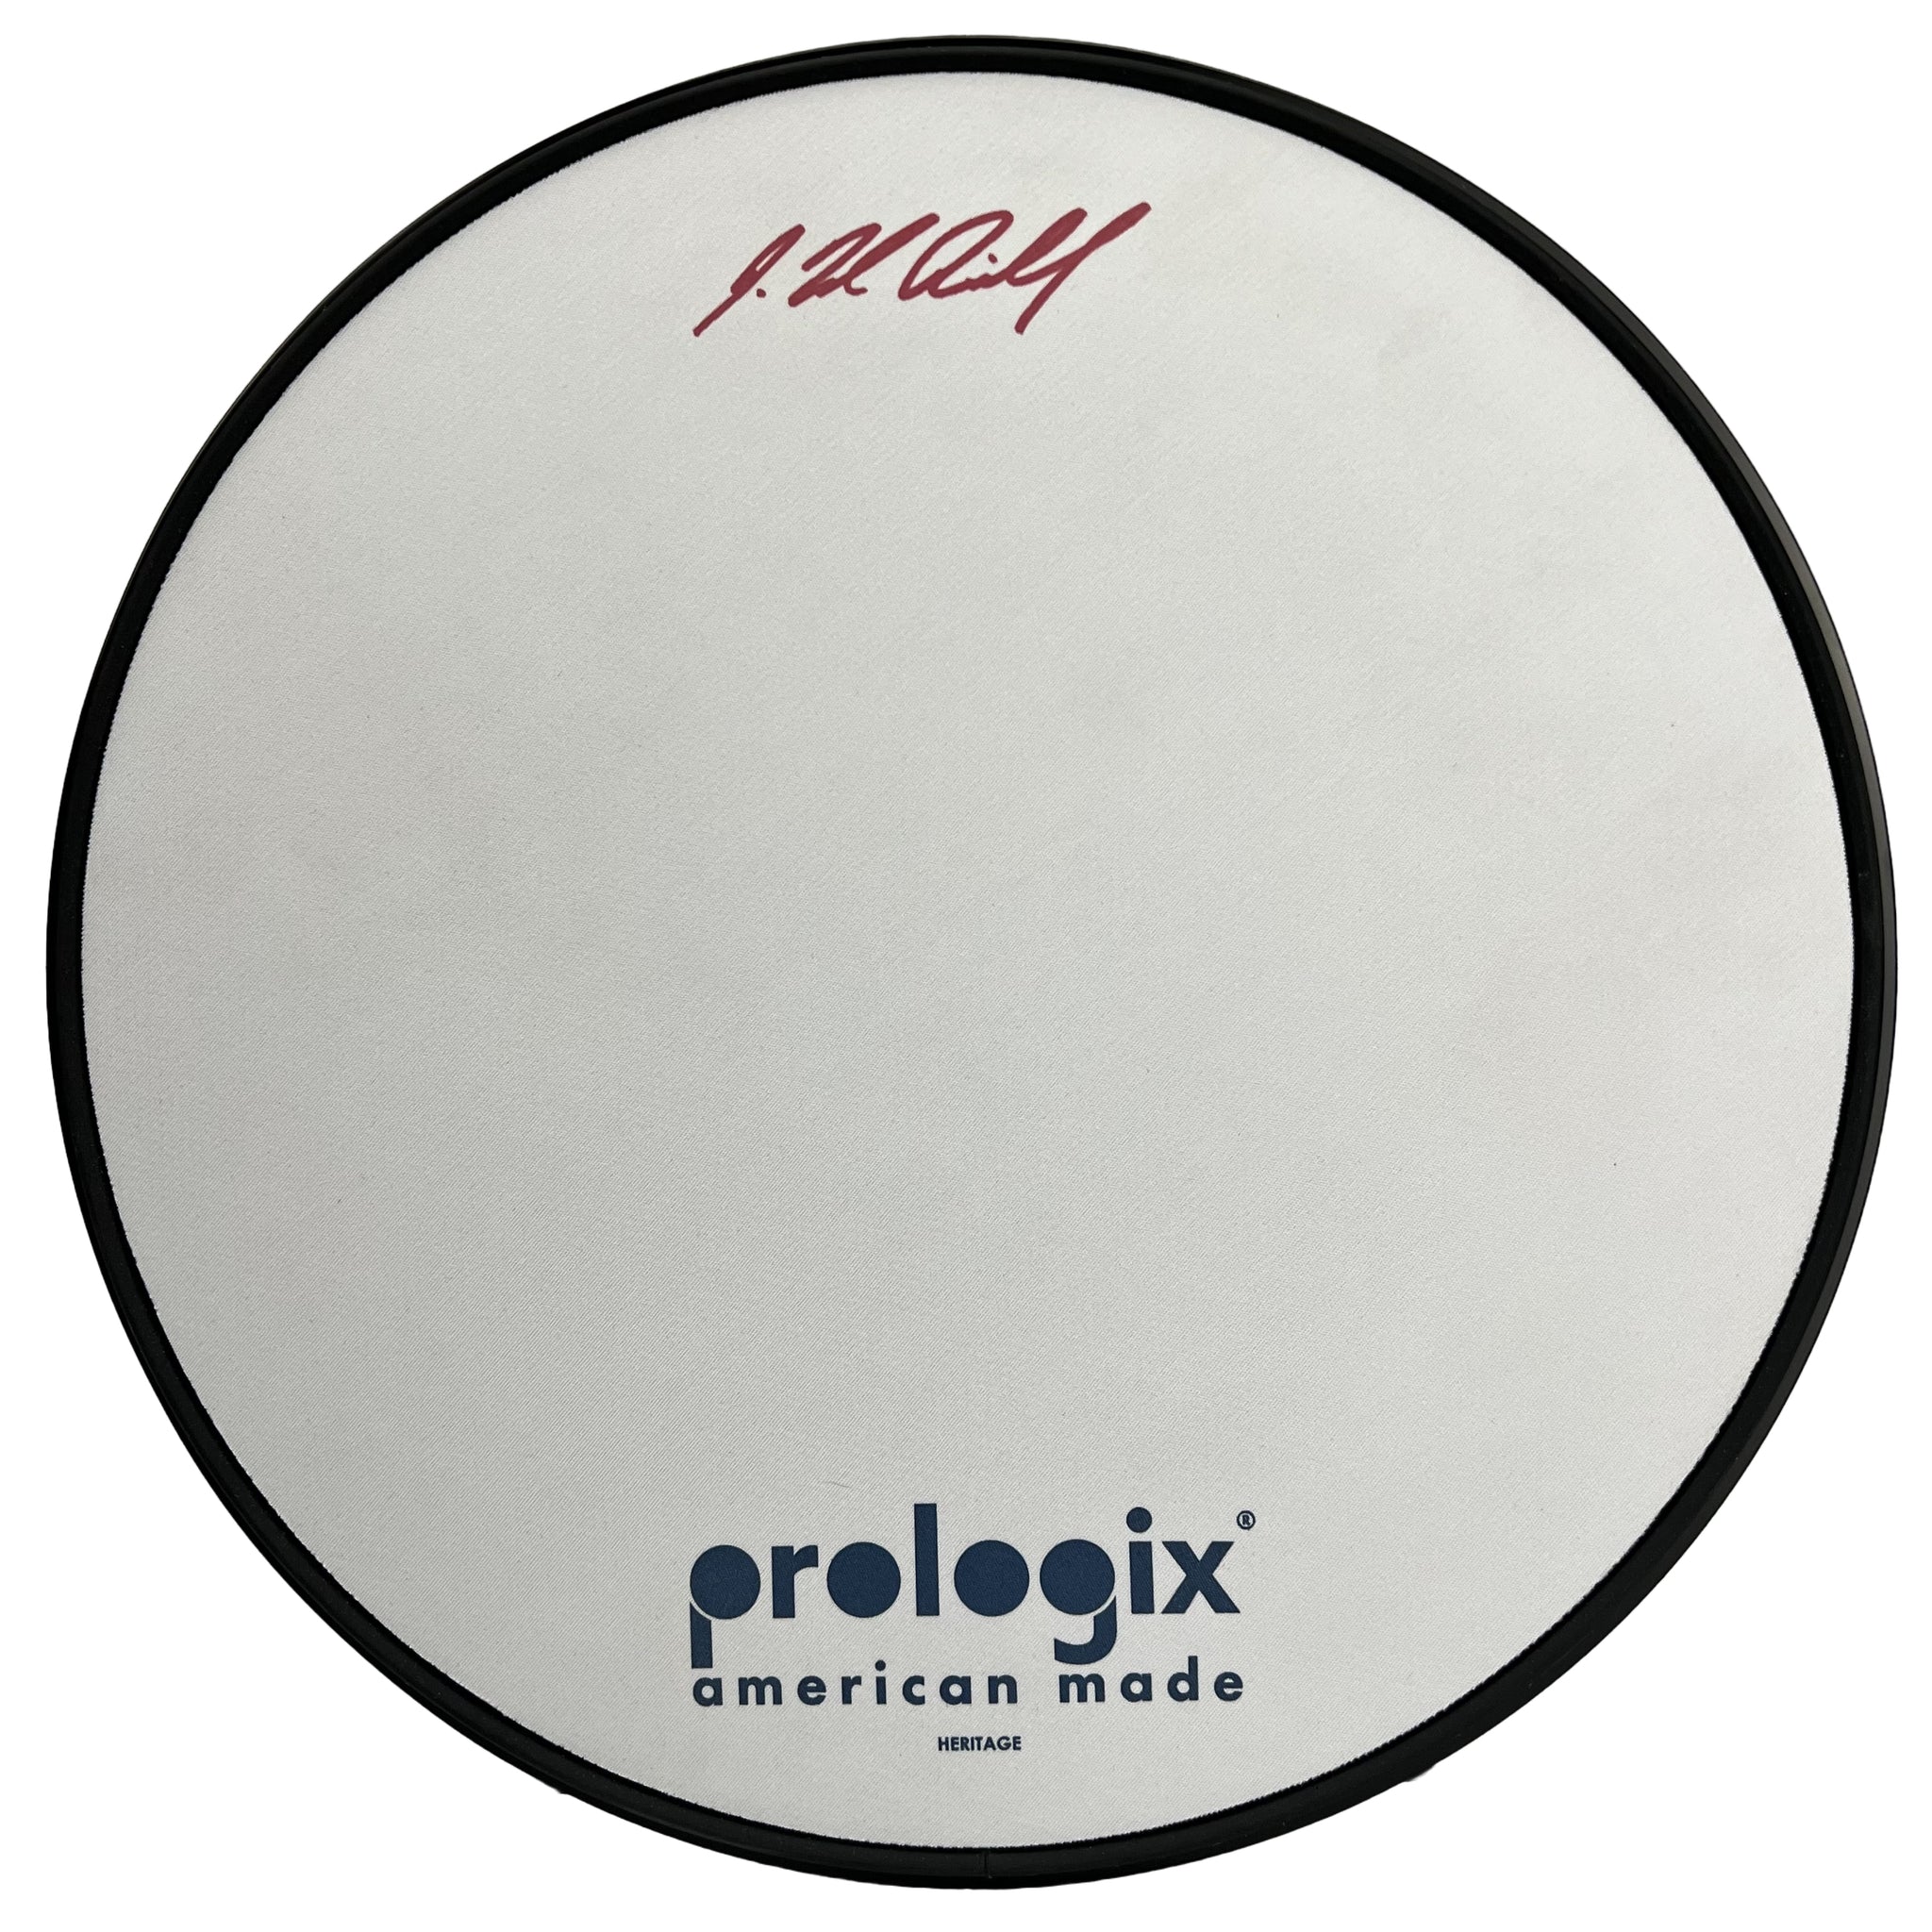 Prologix  Green Logix Practice Pads - Prologix Percussion